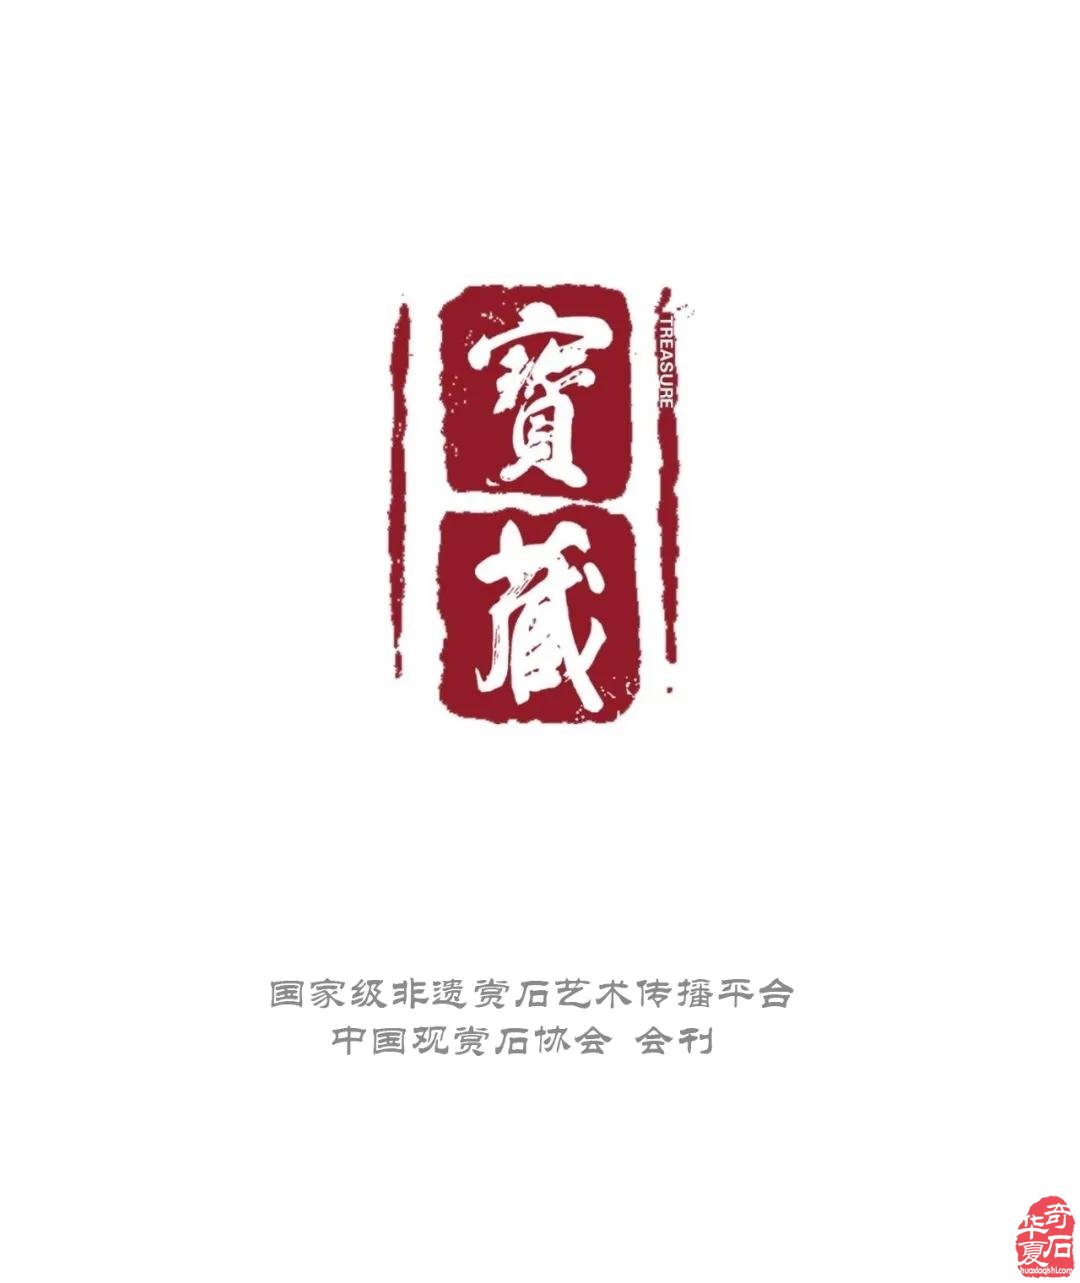 中国观赏石协会关于举办第57期观赏石鉴评培训班的通知